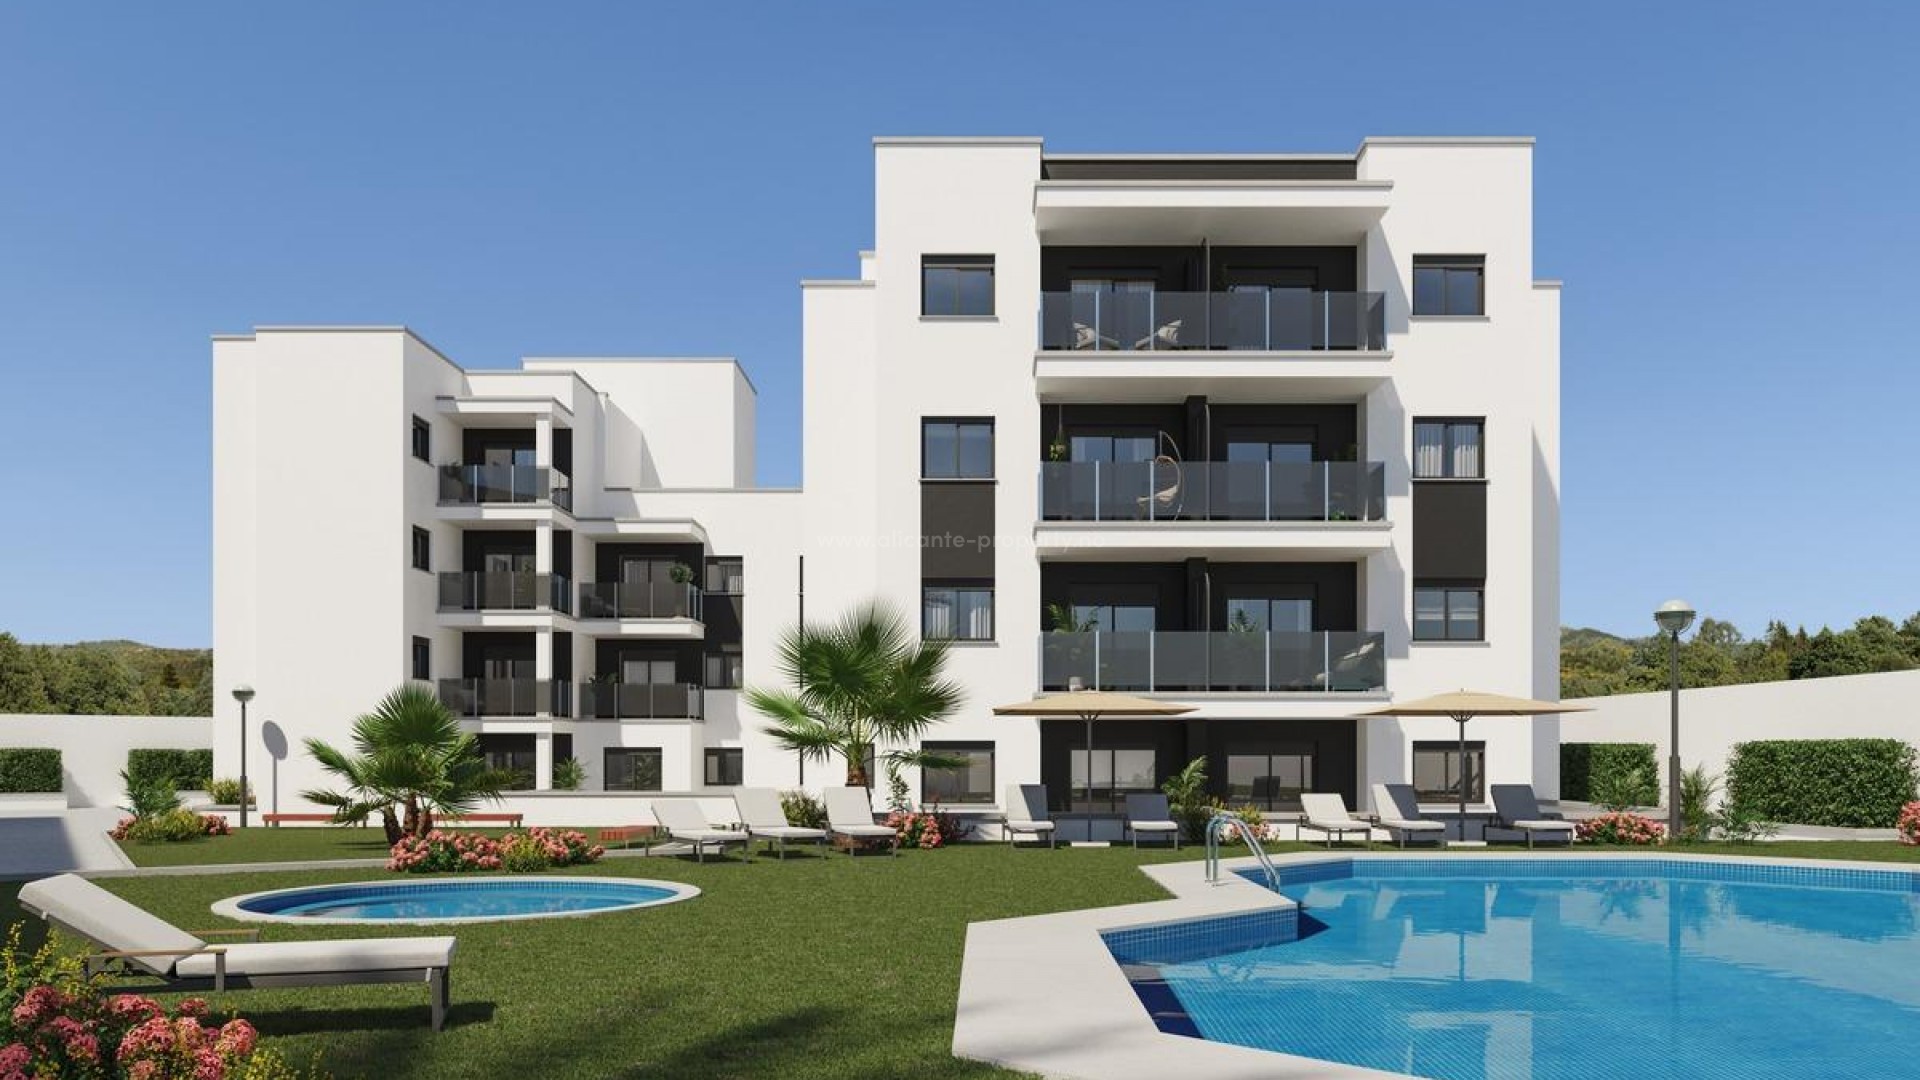 Helt nytt boligkompleks med leiligheter/toppleiligheter i Villajoyosa, 2/3 soverom, 2 bad, terrasser, fellesområder med basseng, alle med parkeringsplass